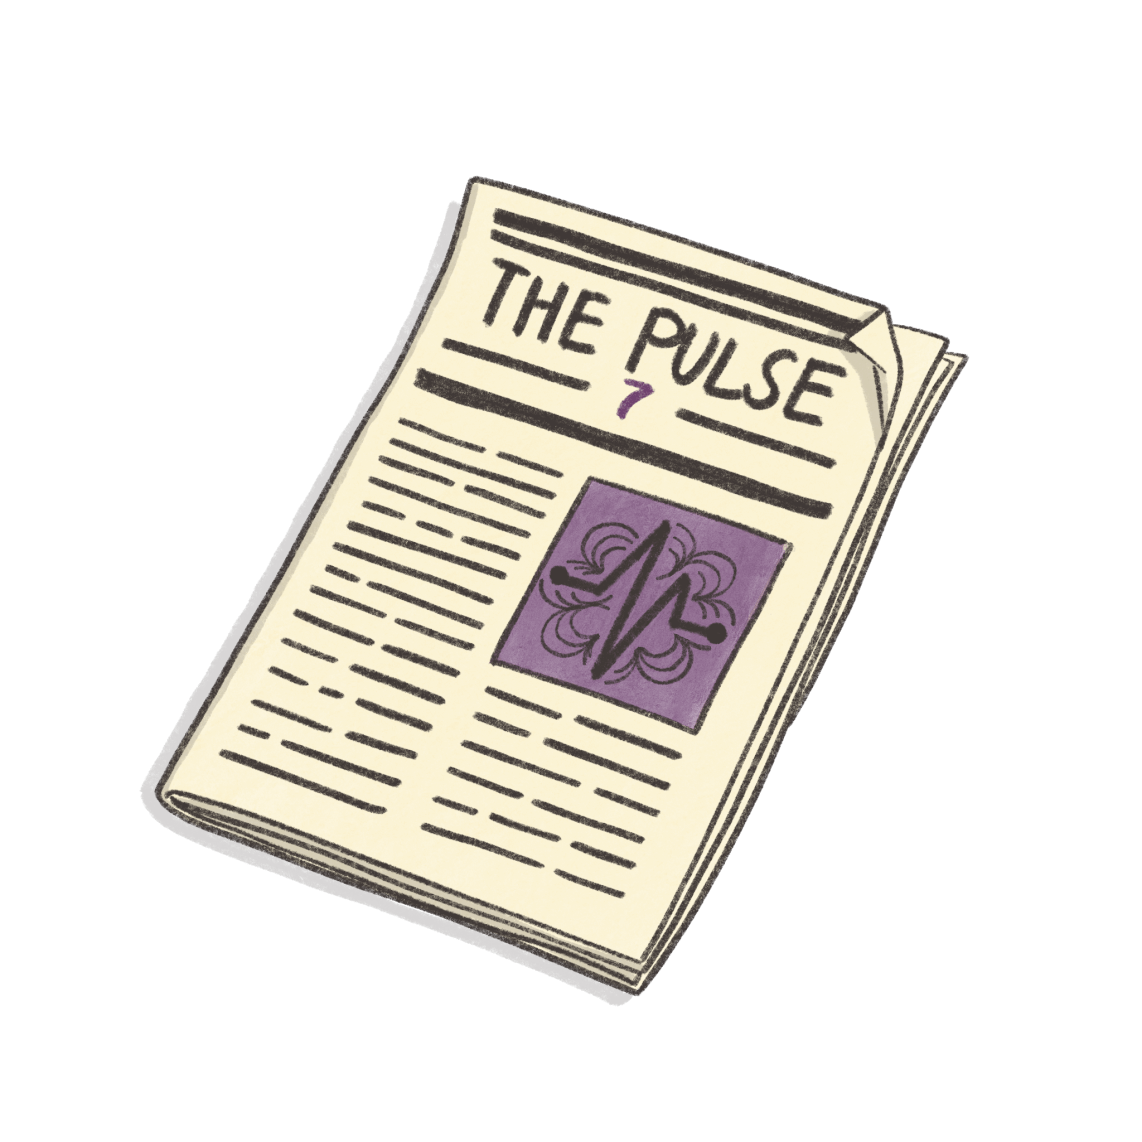 The Apoio Pulse – Issue Seven